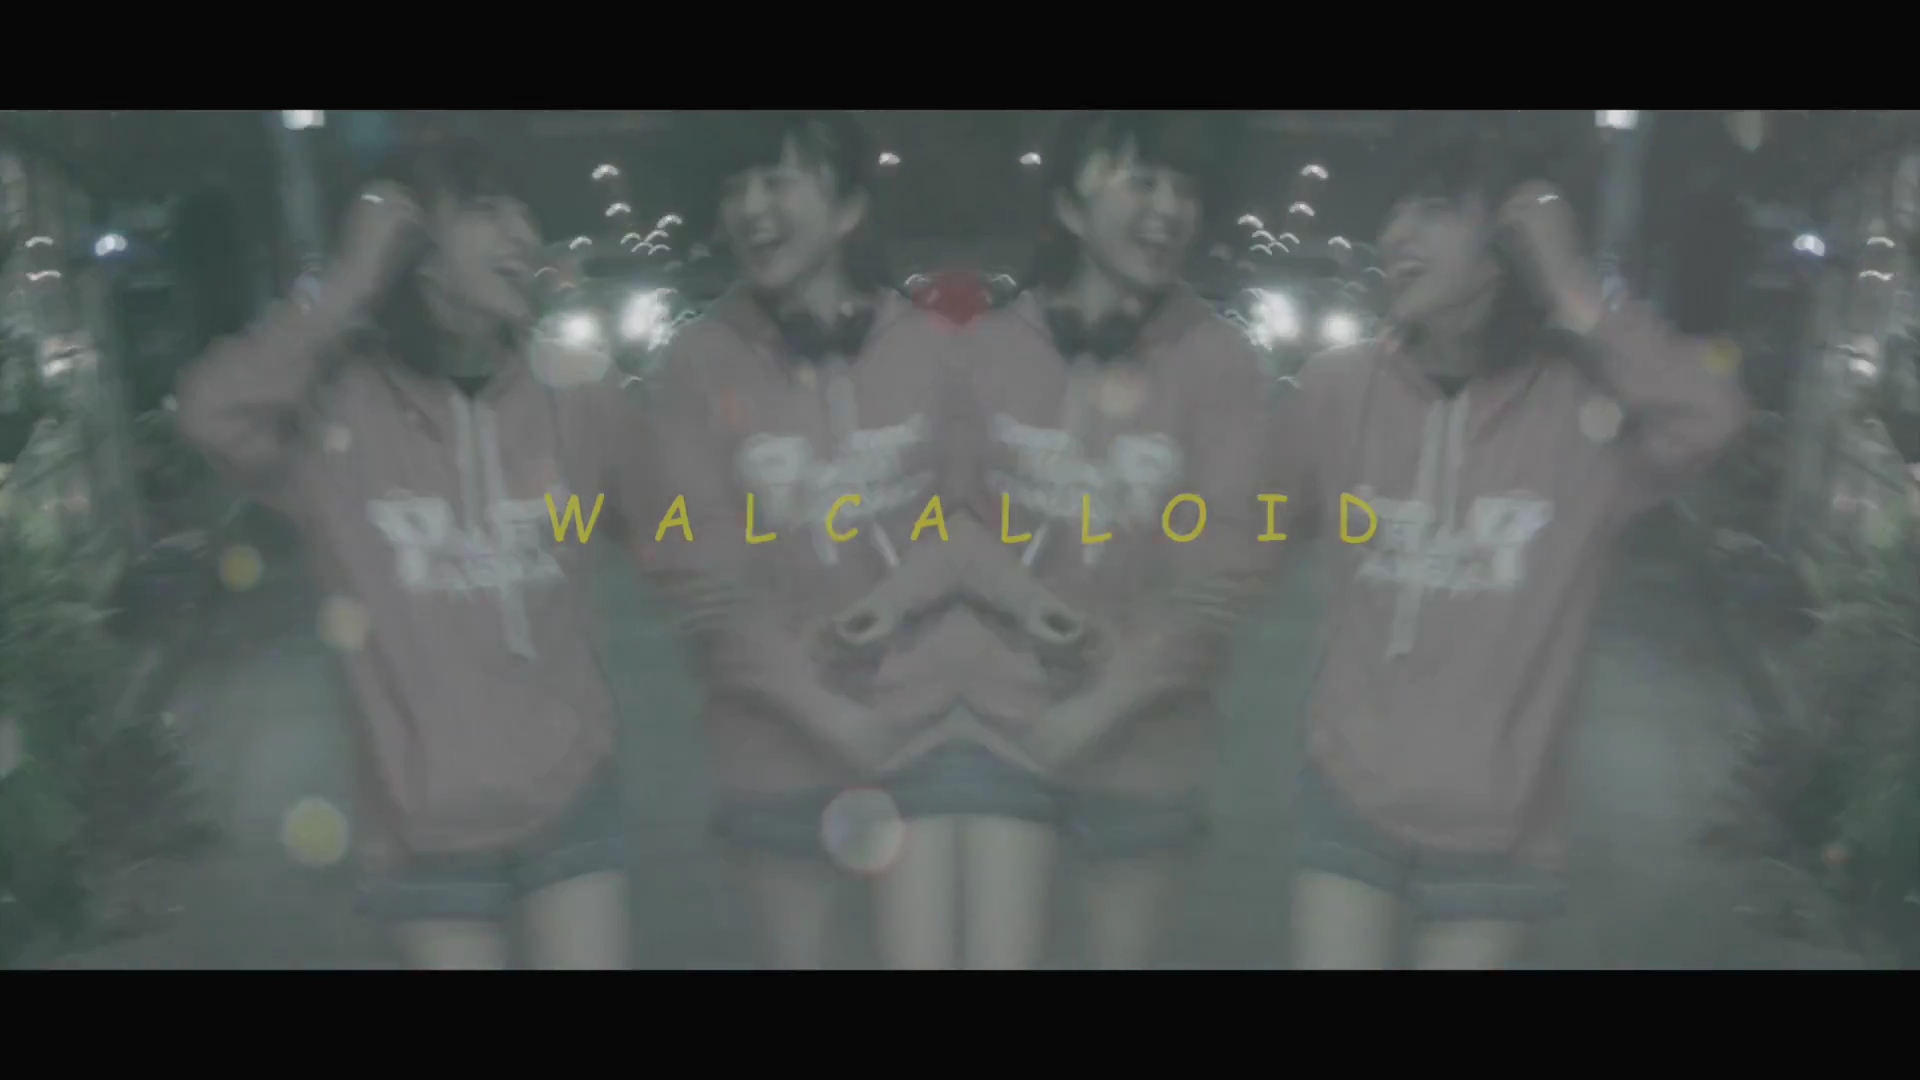 里咲りさ - WALCALLOID (Risa Satosaki - WALCALLOID).mp4_20160316_213312.812